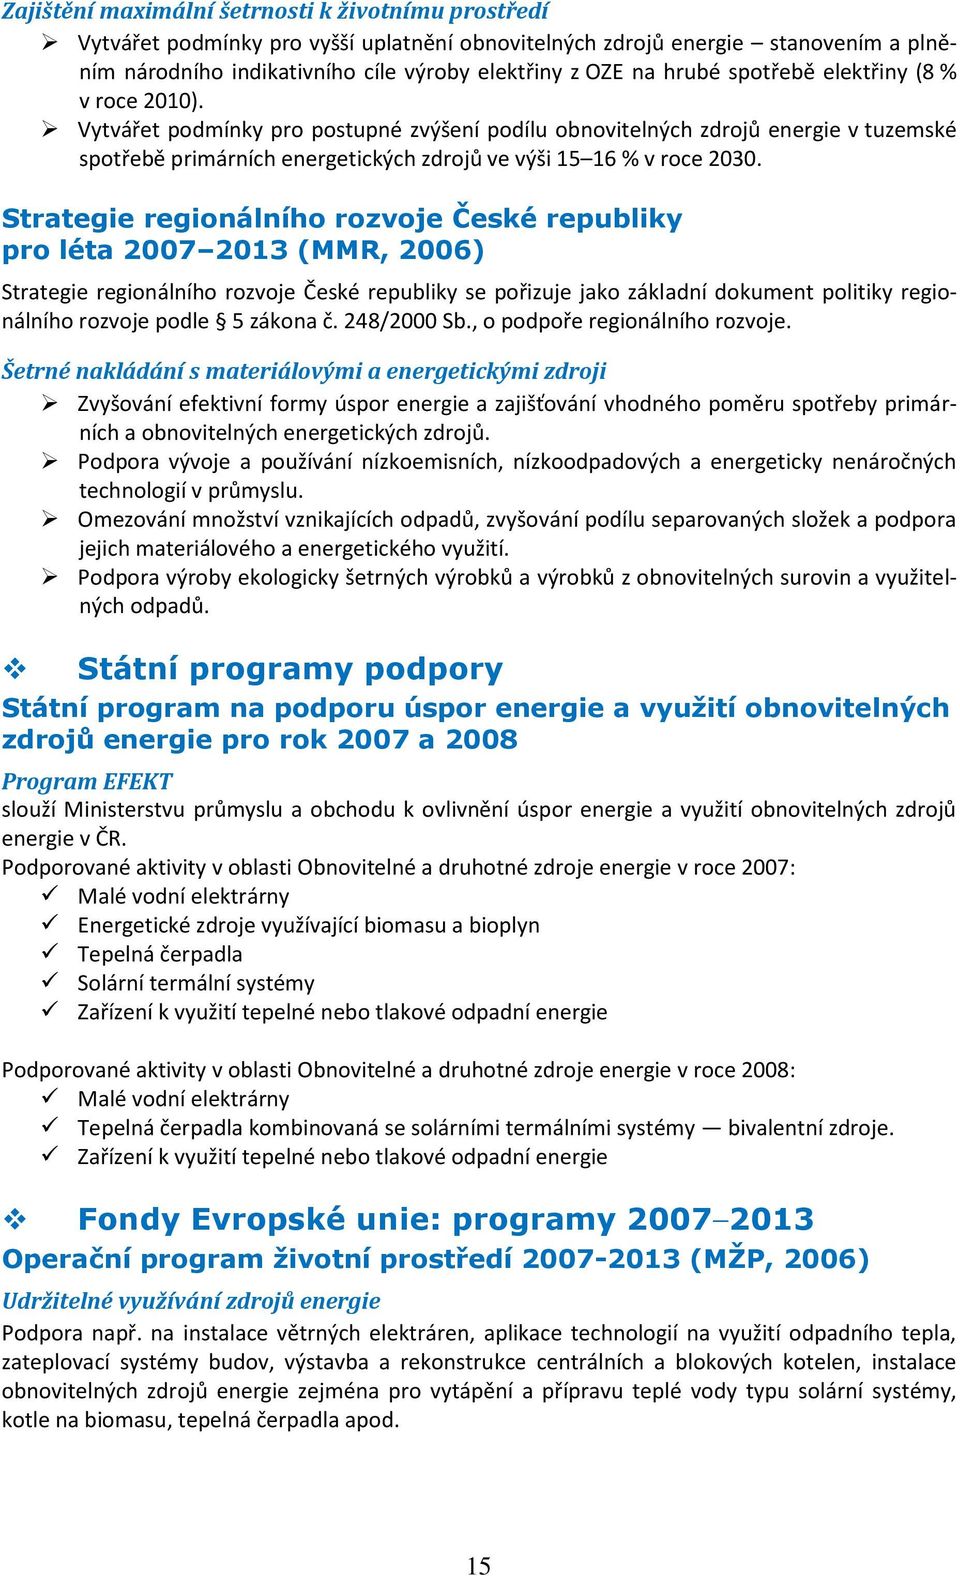 Strategie regionálního rozvoje České republiky pro léta 2007 2013 (MMR, 2006) Strategie regionálního rozvoje České republiky se pořizuje jako základní dokument politiky regionálního rozvoje podle 5